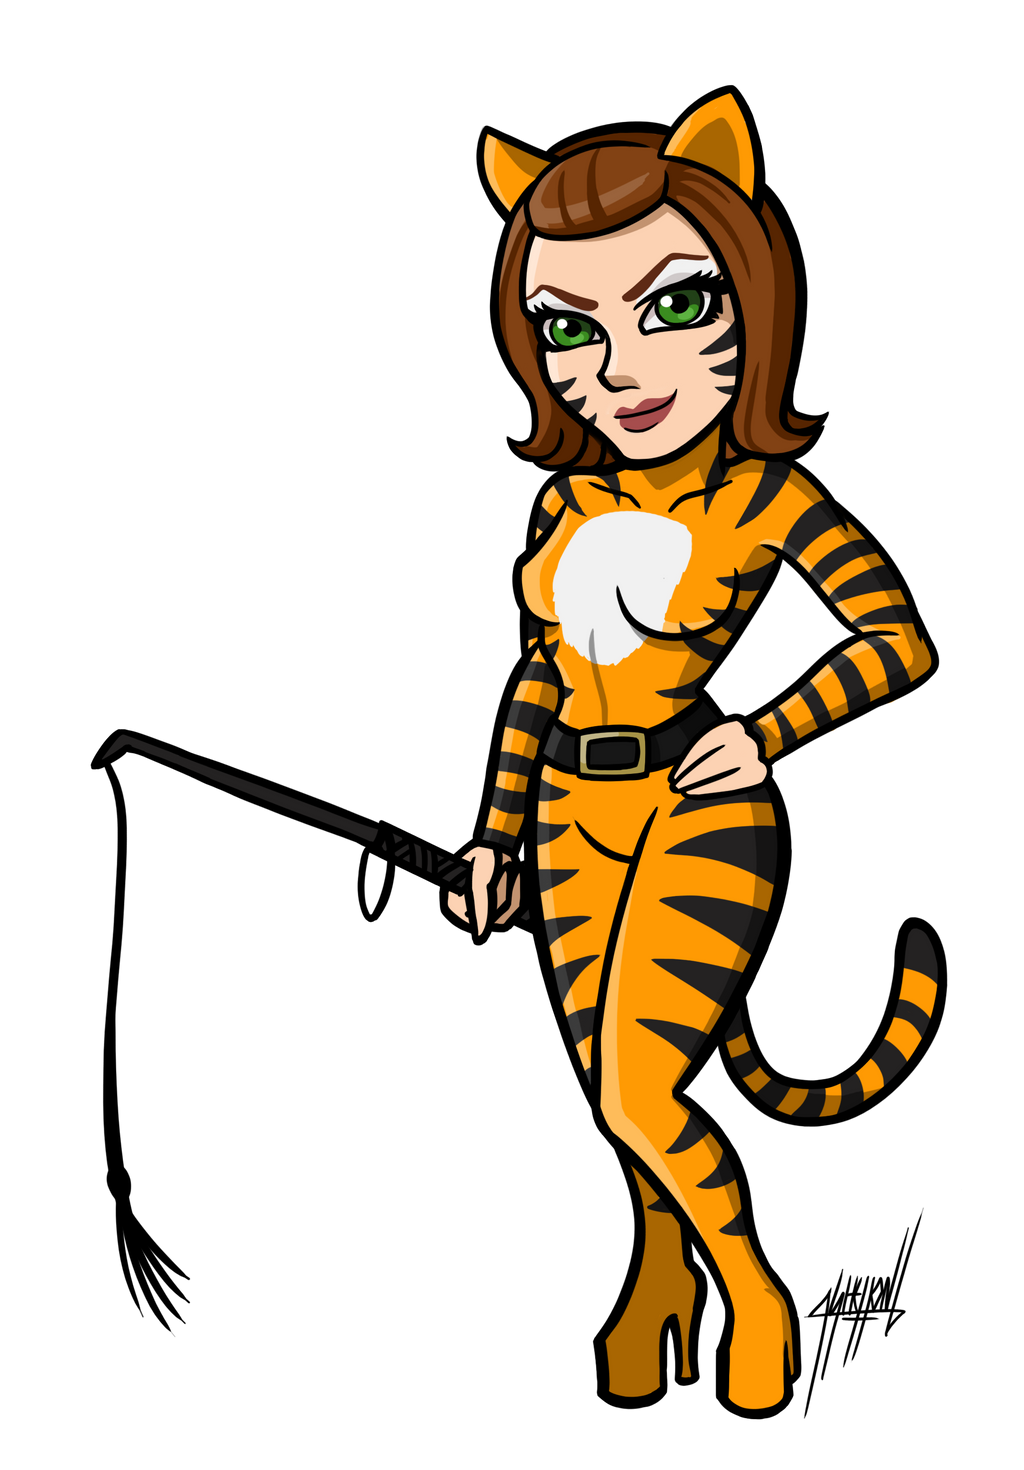 KFP : Master Tigress by shaloneSK on DeviantArt